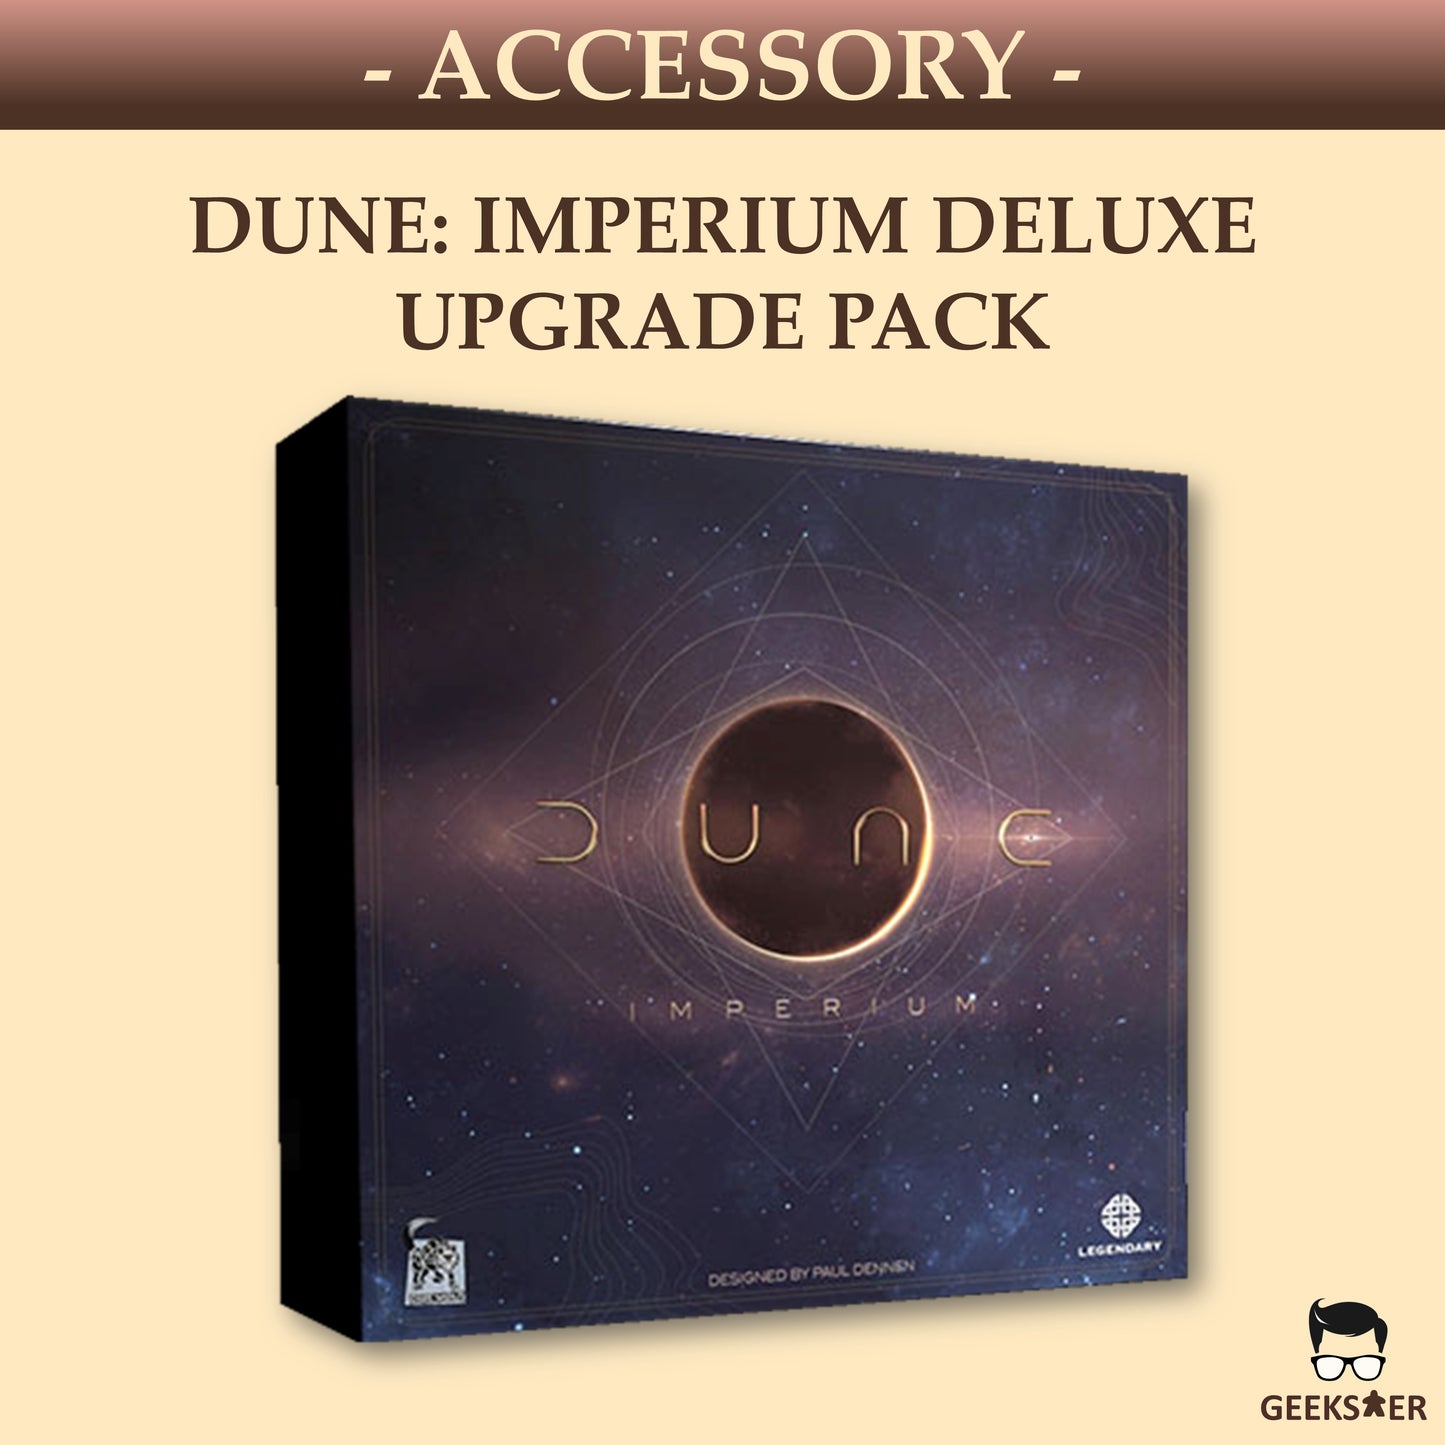 Dune: Imperium Deluxe Upgrade Pack